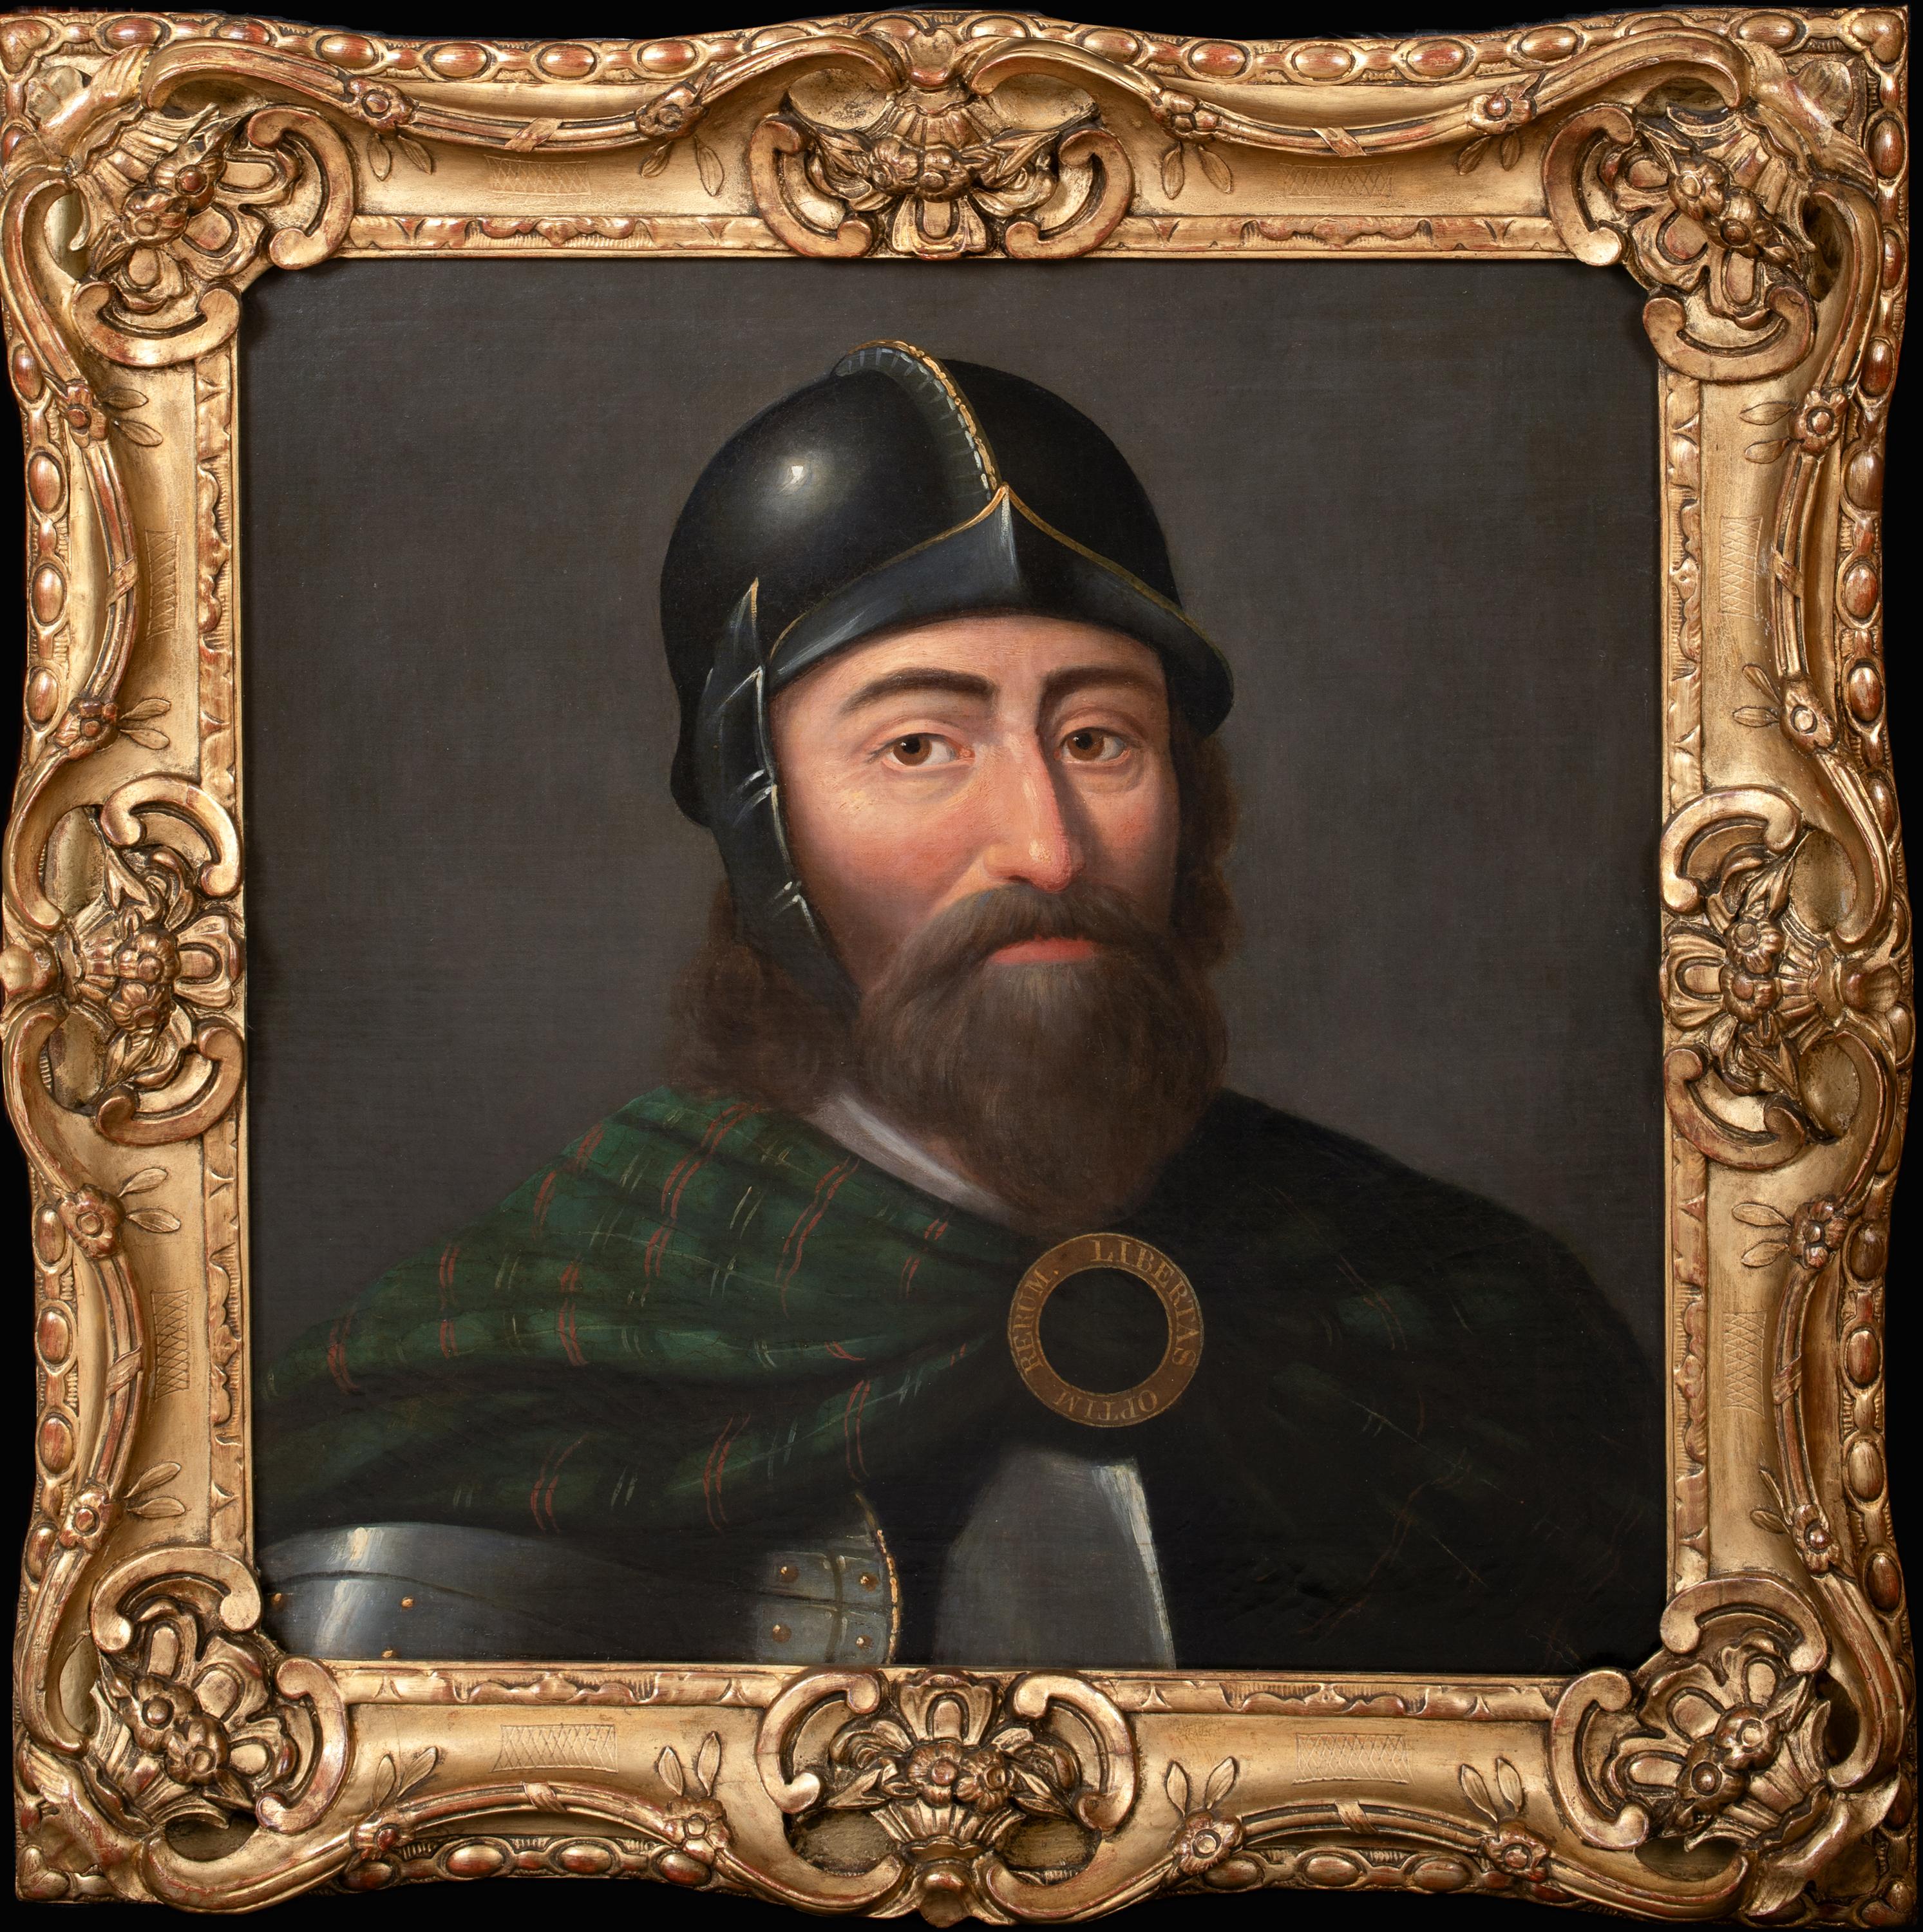 Unknown Portrait Painting – Porträt von William Wallace (1270-1305), um 1700